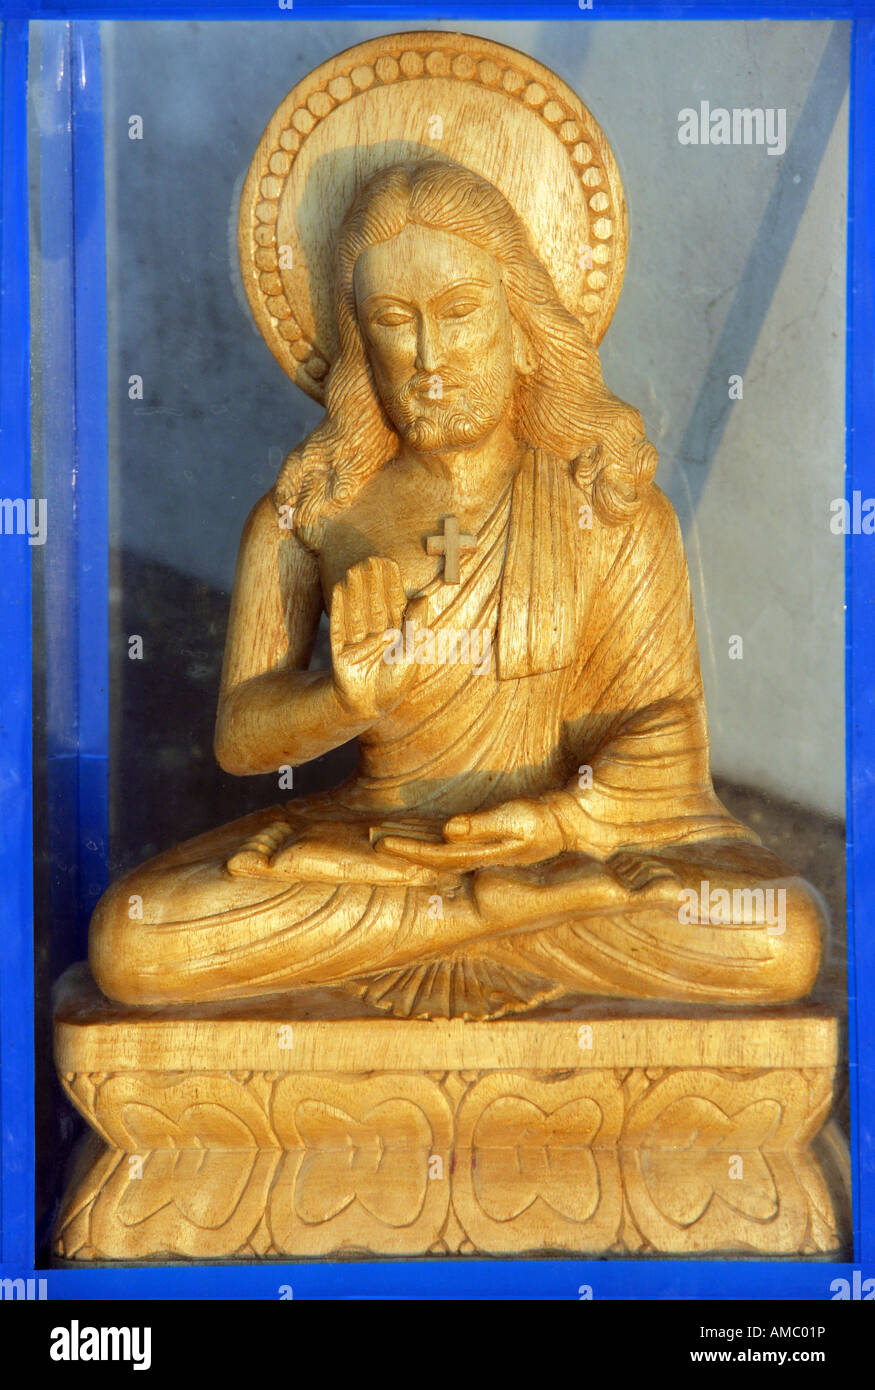 L'Inde, Patna, statue de Jésus Christ dans une position assise bouddhiste Banque D'Images